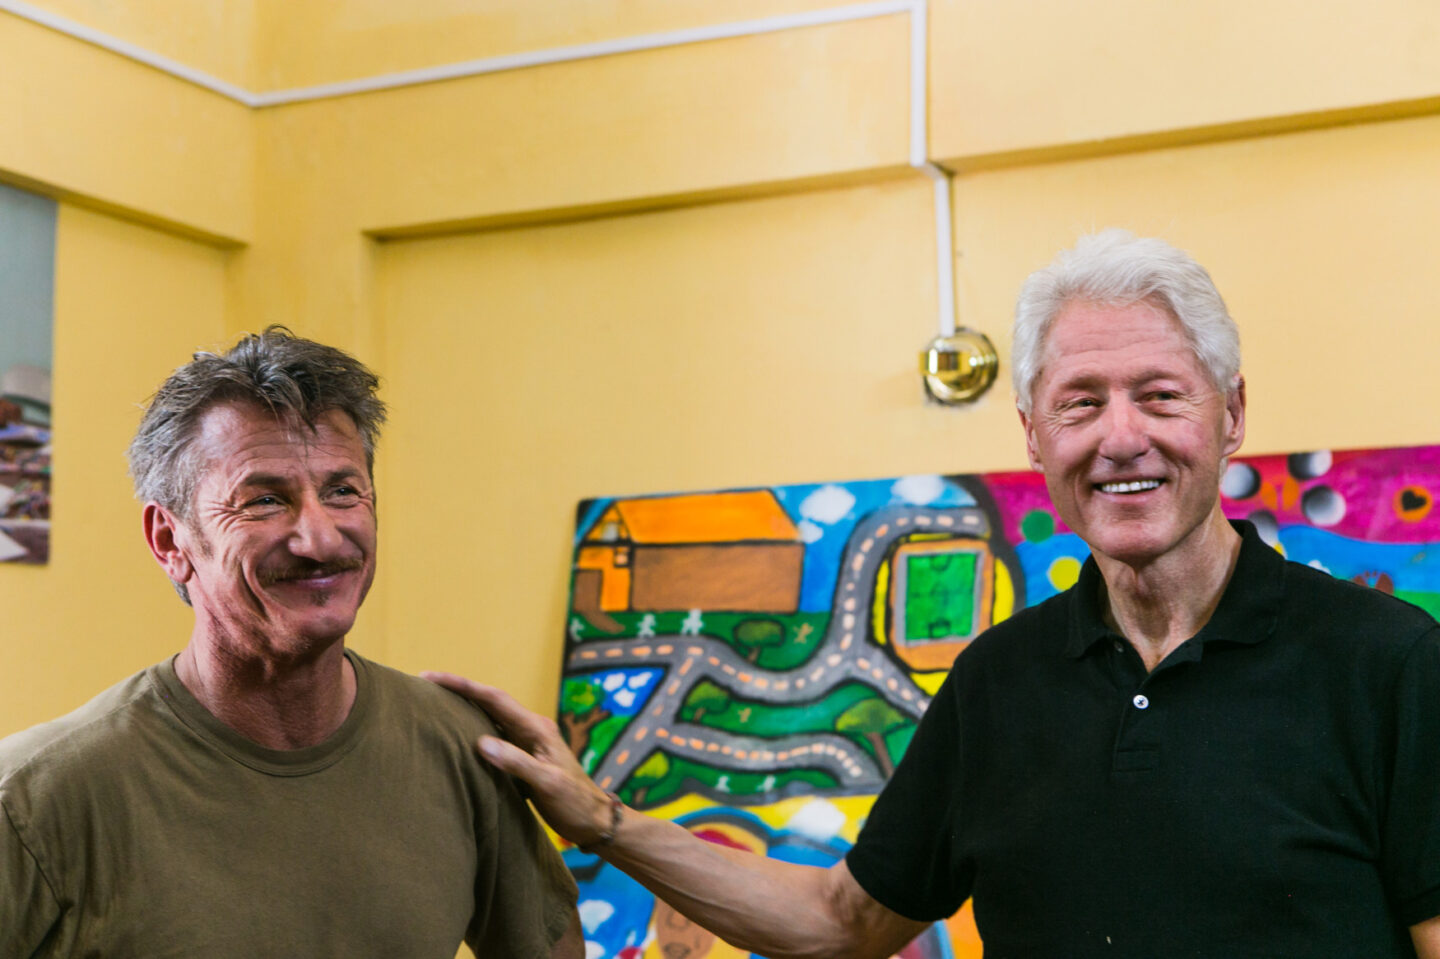 President Clinton and Sean Penn